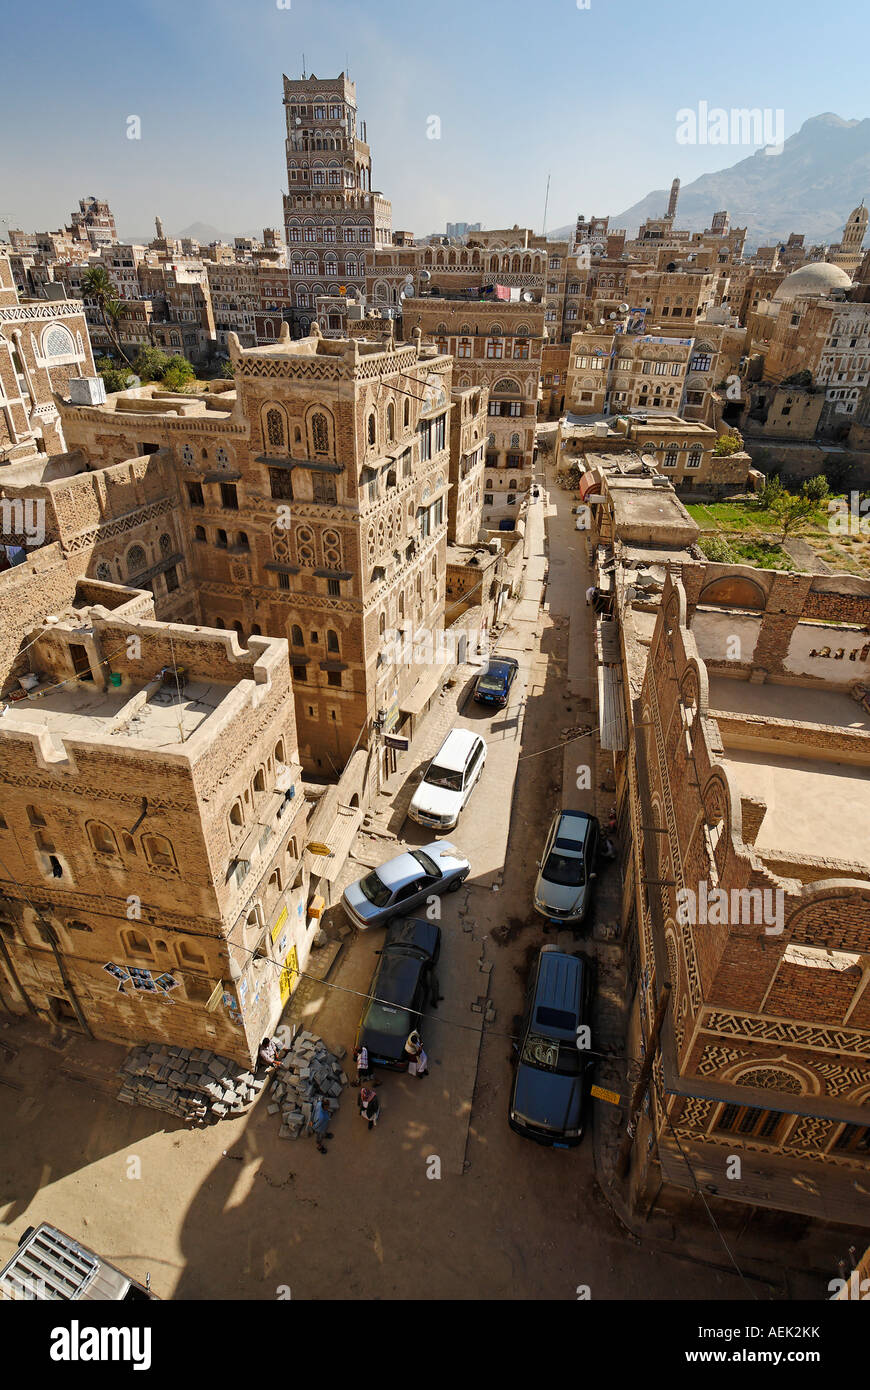 Historic old town of Sanaa, Sana´a, Unesco World Heritage Site, Yemen Stock Photo